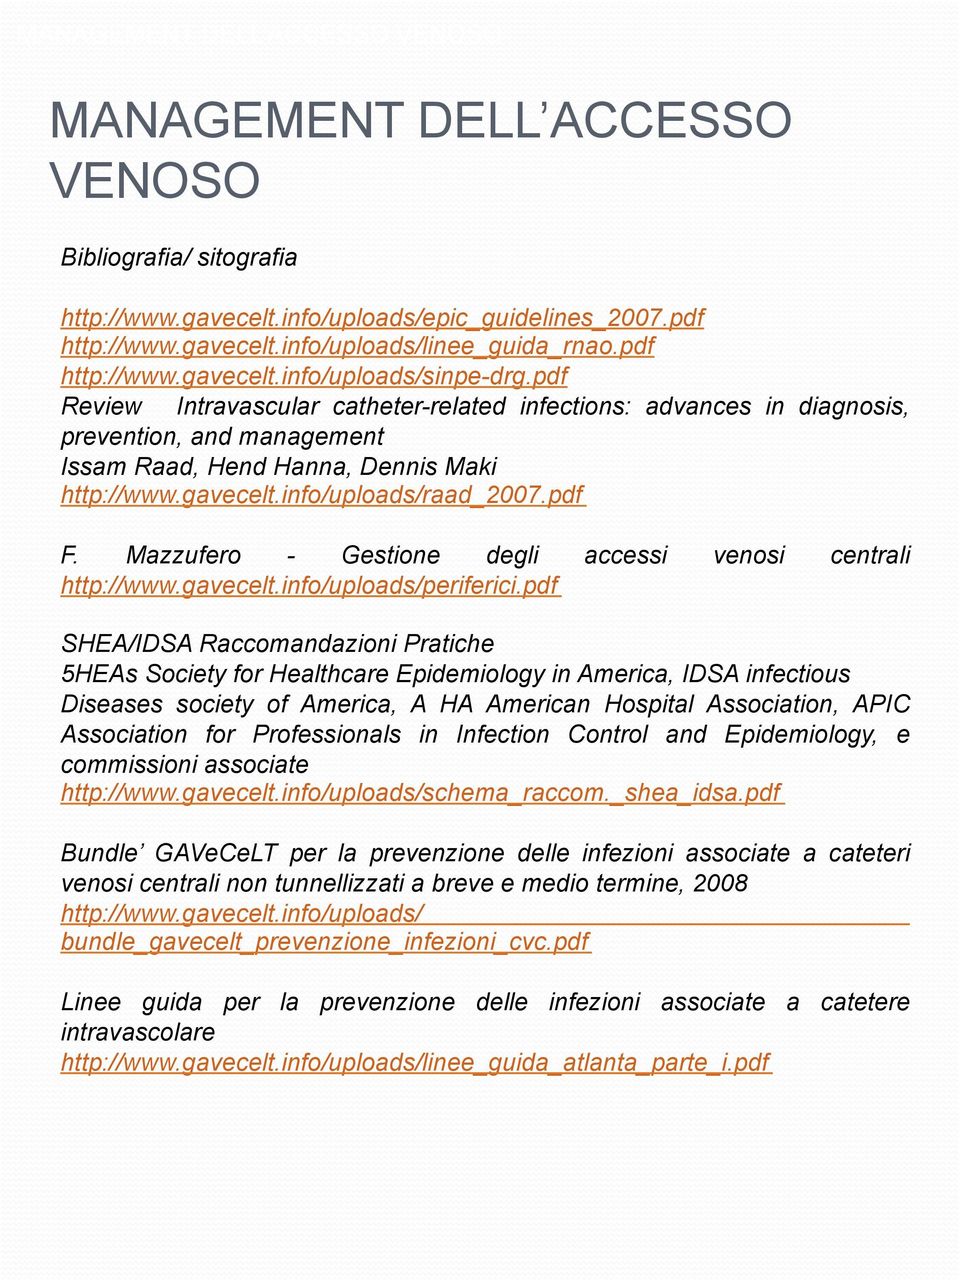 Mazzufero - Gestione degli accessi venosi centrali http://www.gavecelt.info/uploads/periferici.